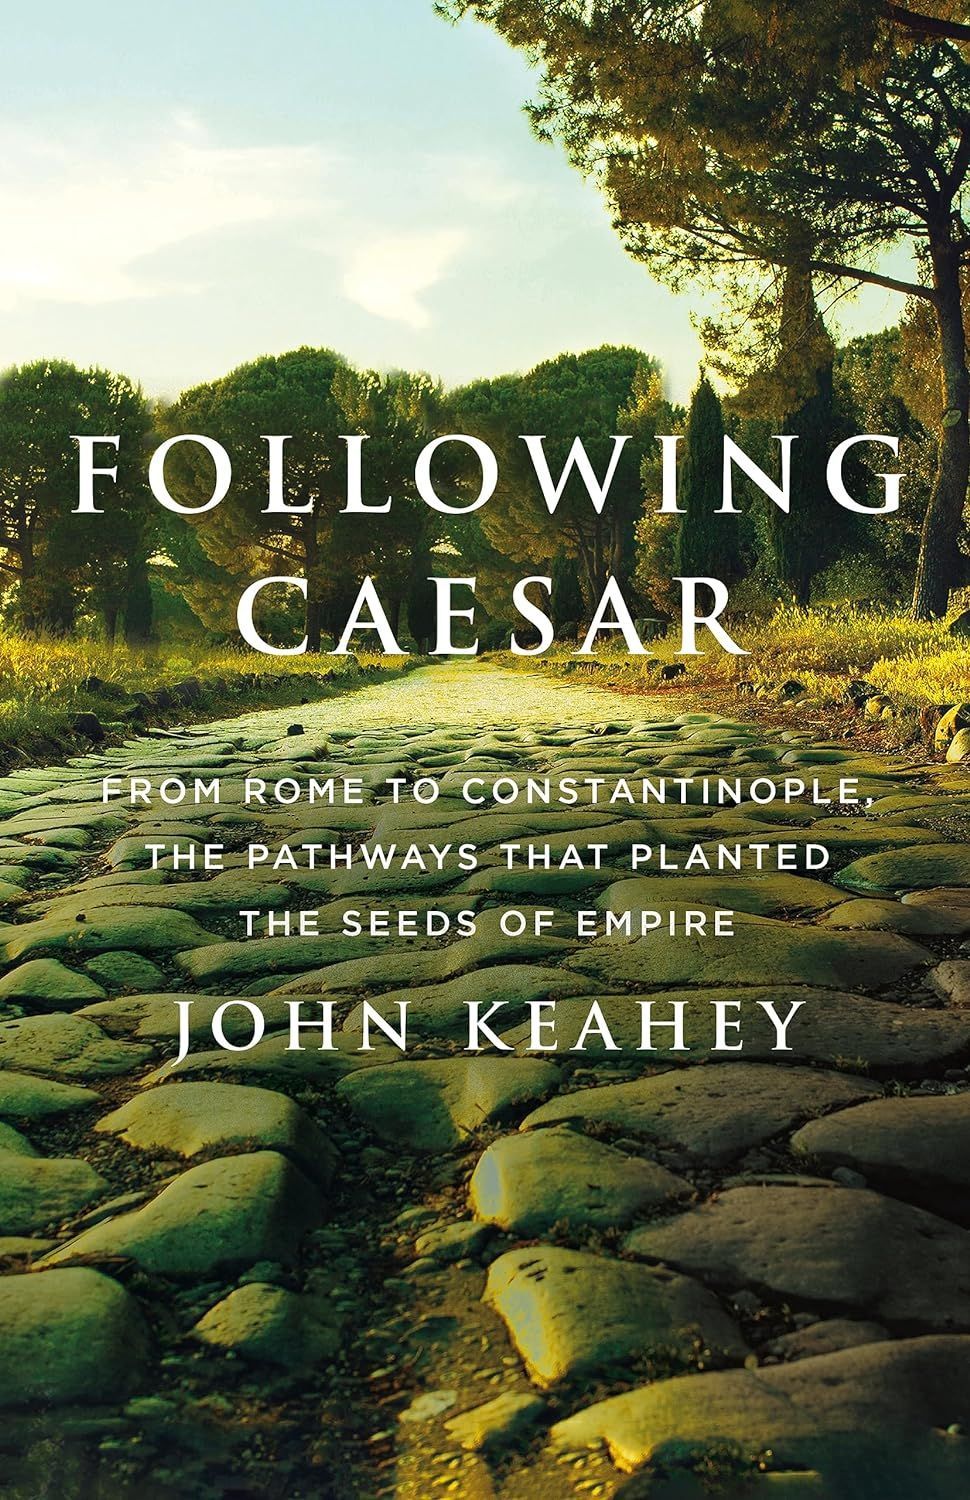 Roadside Attractions: On John Keahey’s “Following Caesar”